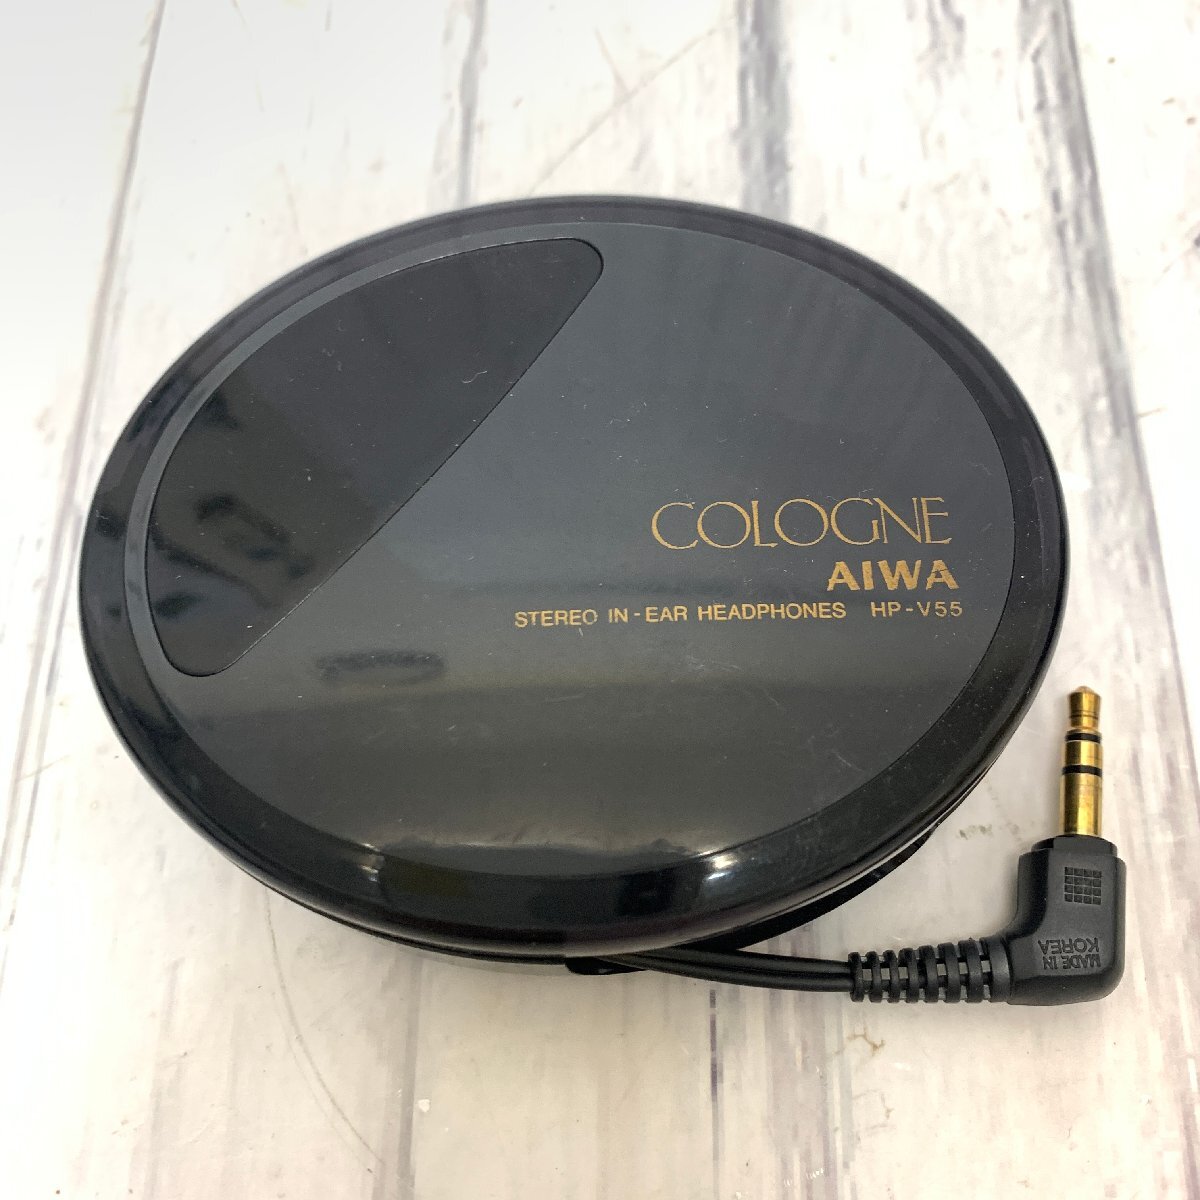 s001 A3.1 хранение товар AIWA Aiwa HP-V55 COLOGNE stereo in-ear headphones труба ho n наматывать брать . слуховай аппарат наушники подлинная вещь редкость 